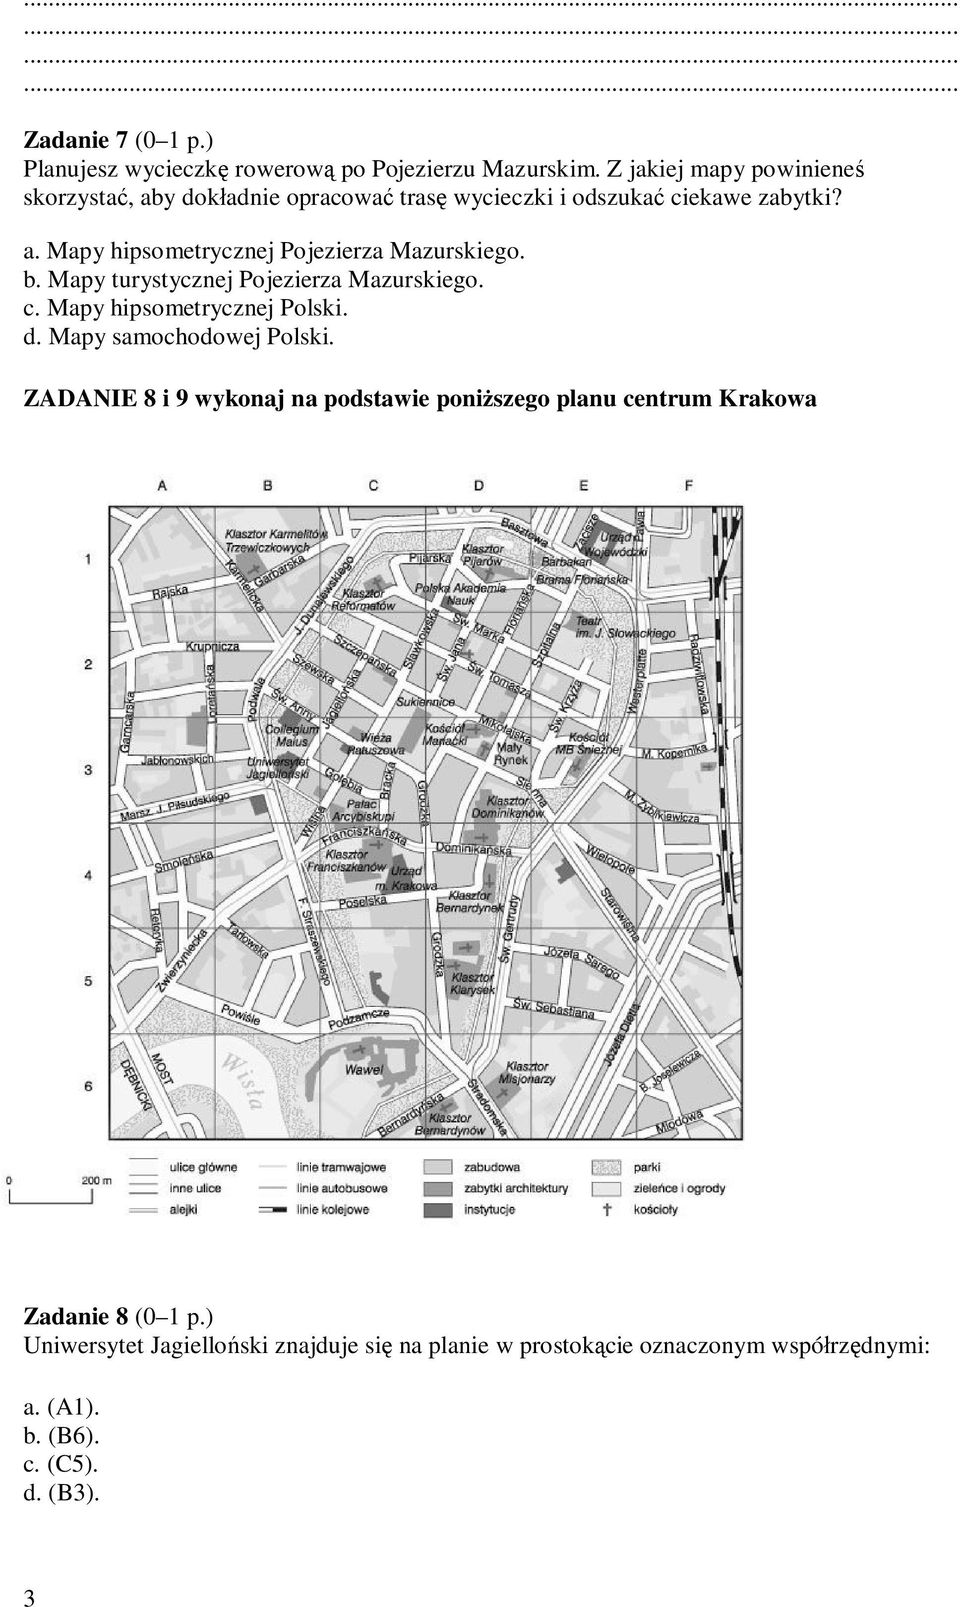 b. Mapy turystycznej Pojezierza Mazurskiego. c. Mapy hipsometrycznej Polski. d. Mapy samochodowej Polski.